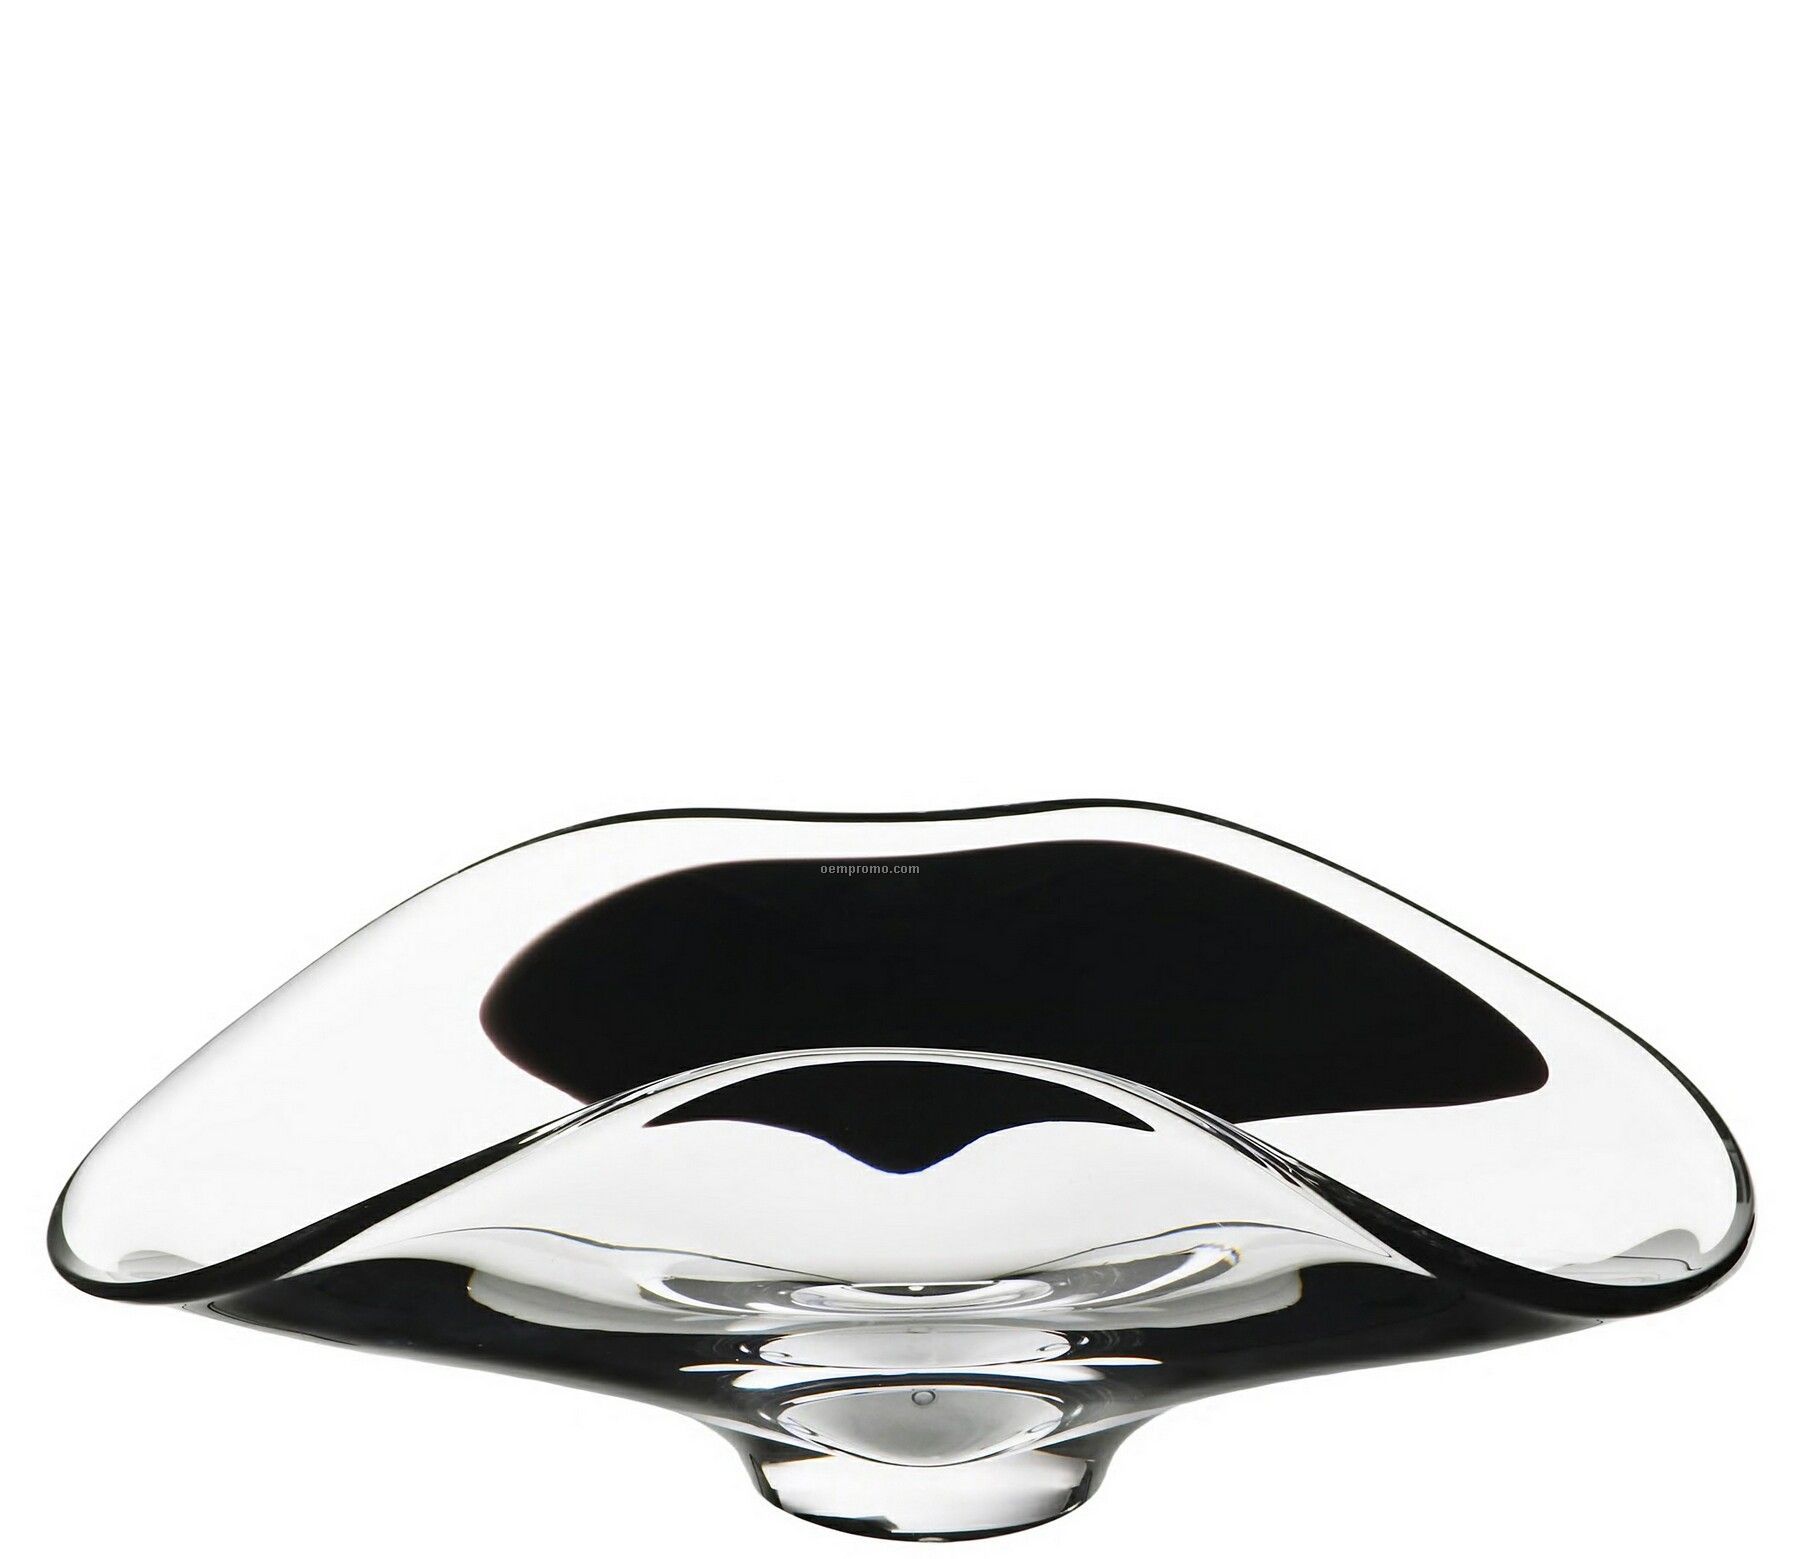 Saraband Crystal Bowl By Goran Warff